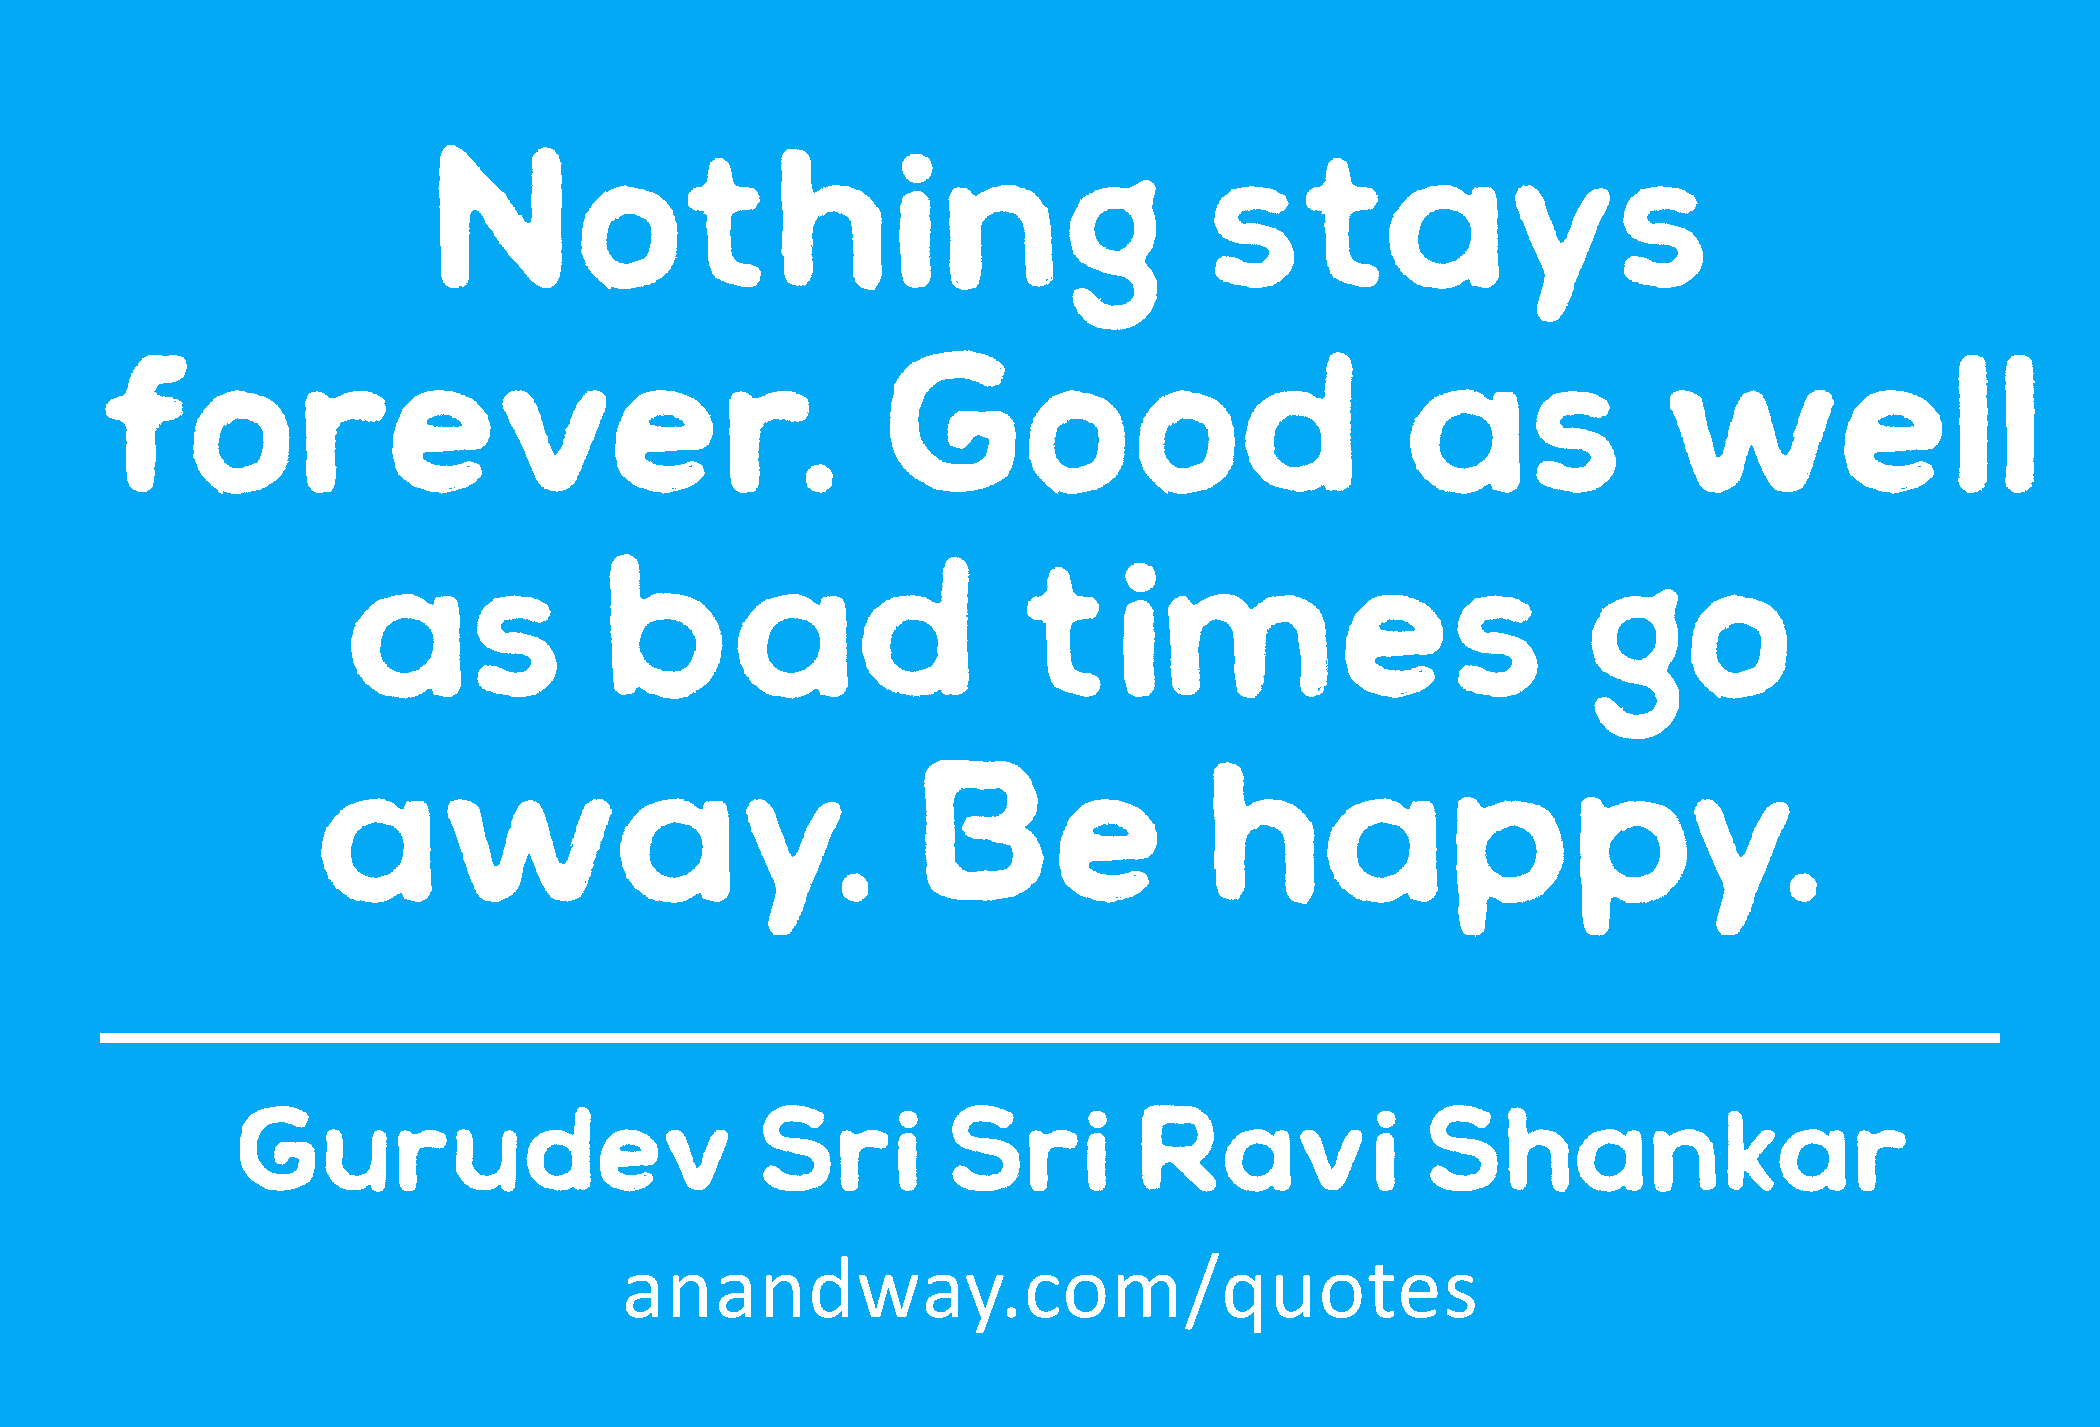 Nothing stays forever. Good as well as bad times go away. Be happy. 
 -Gurudev Sri Sri Ravi Shankar